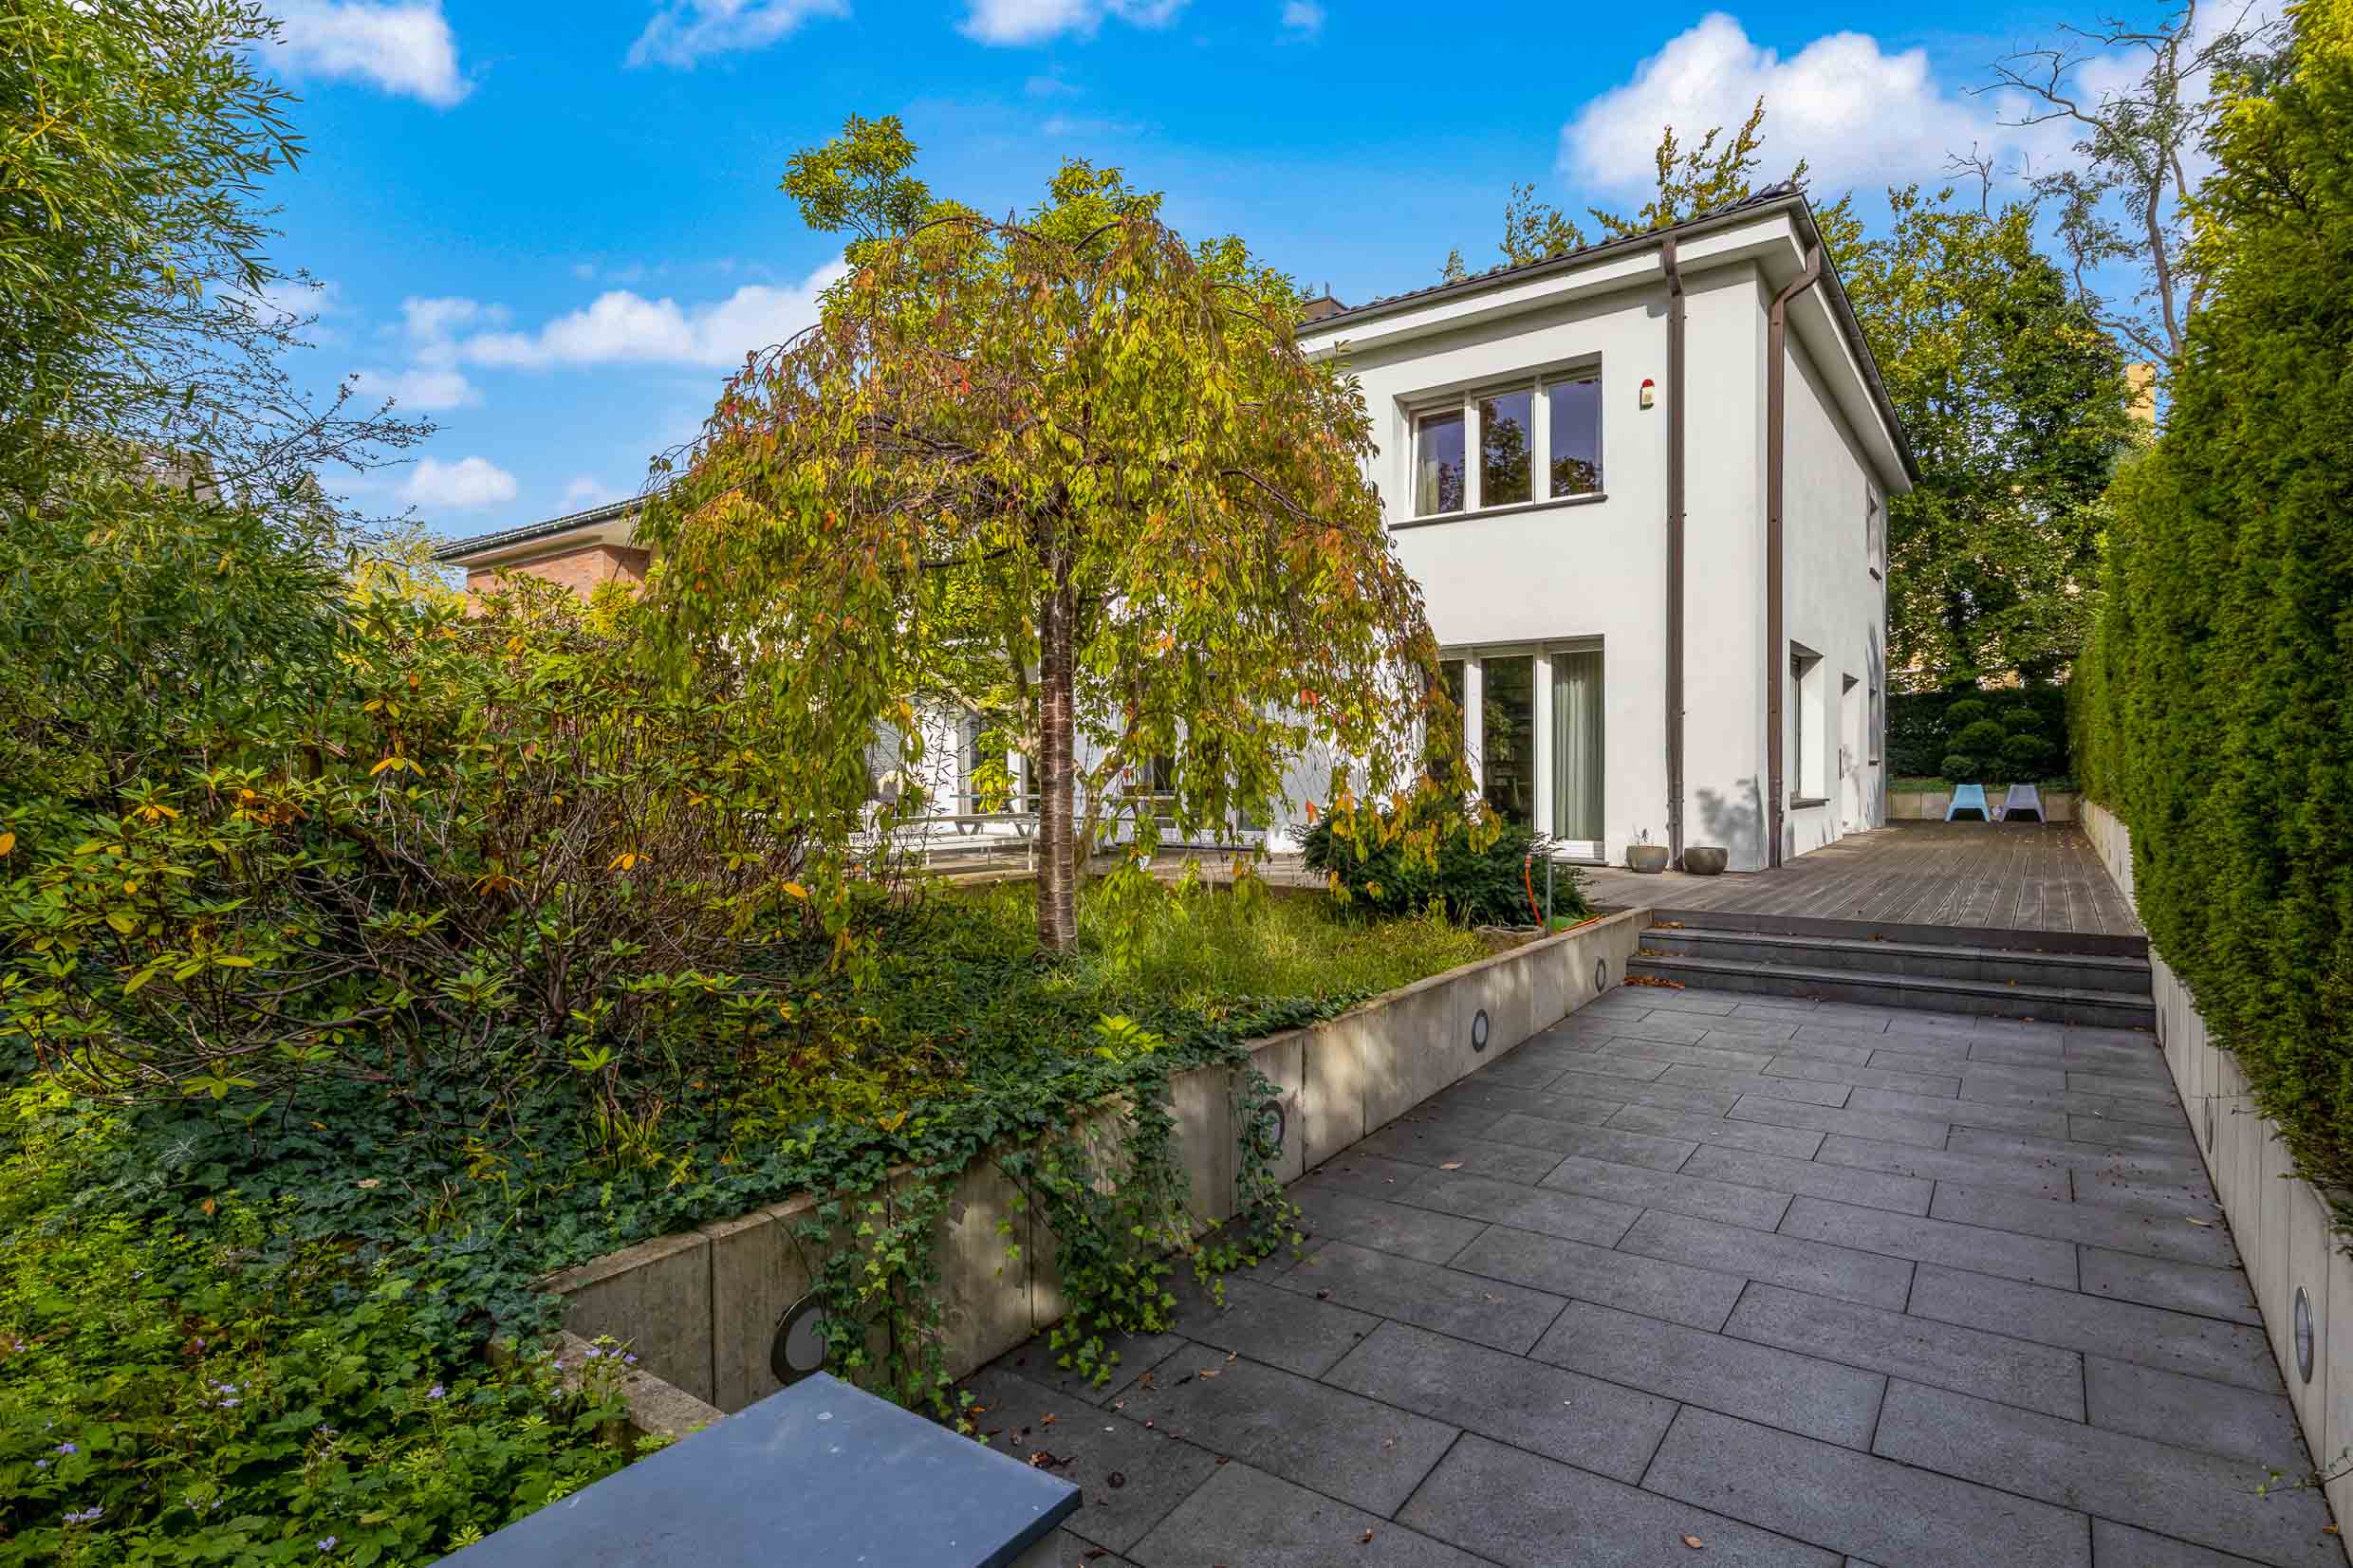 Design Villa for rent in Berlin Westend